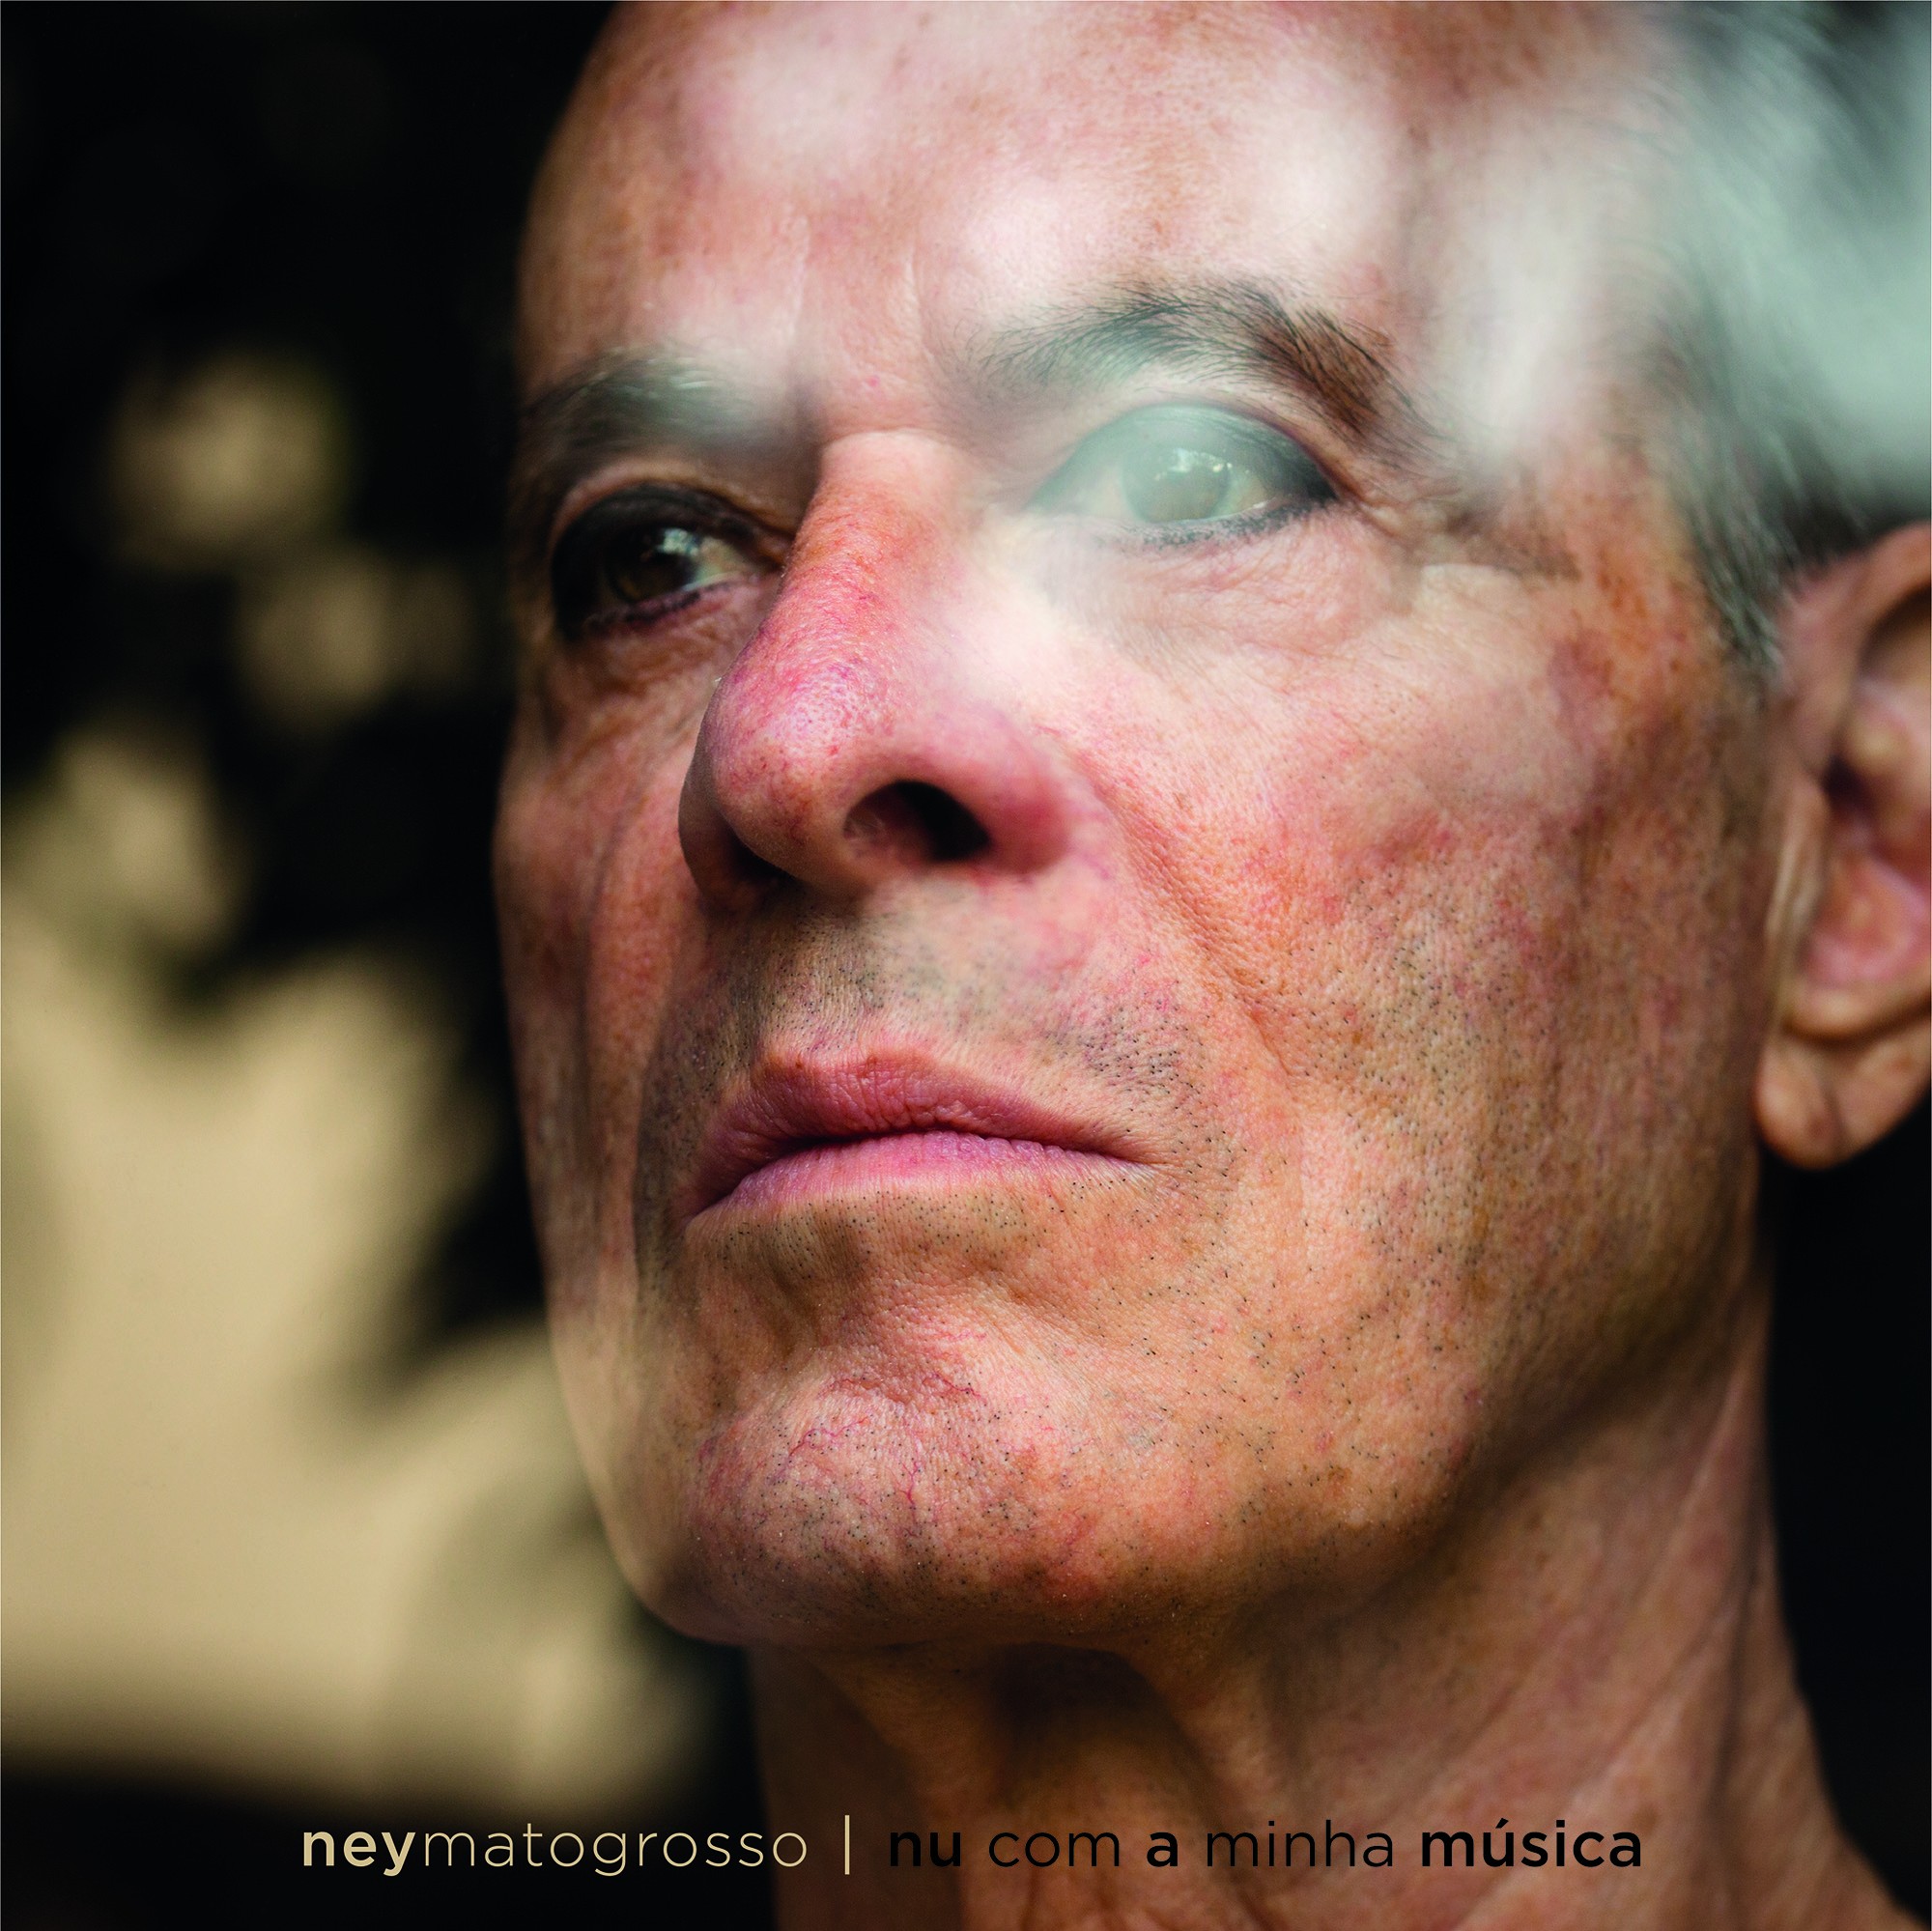 Ney Matogrosso lança single com música de Gerson Conrad 50 anos após explosão do grupo Secos & Molhados